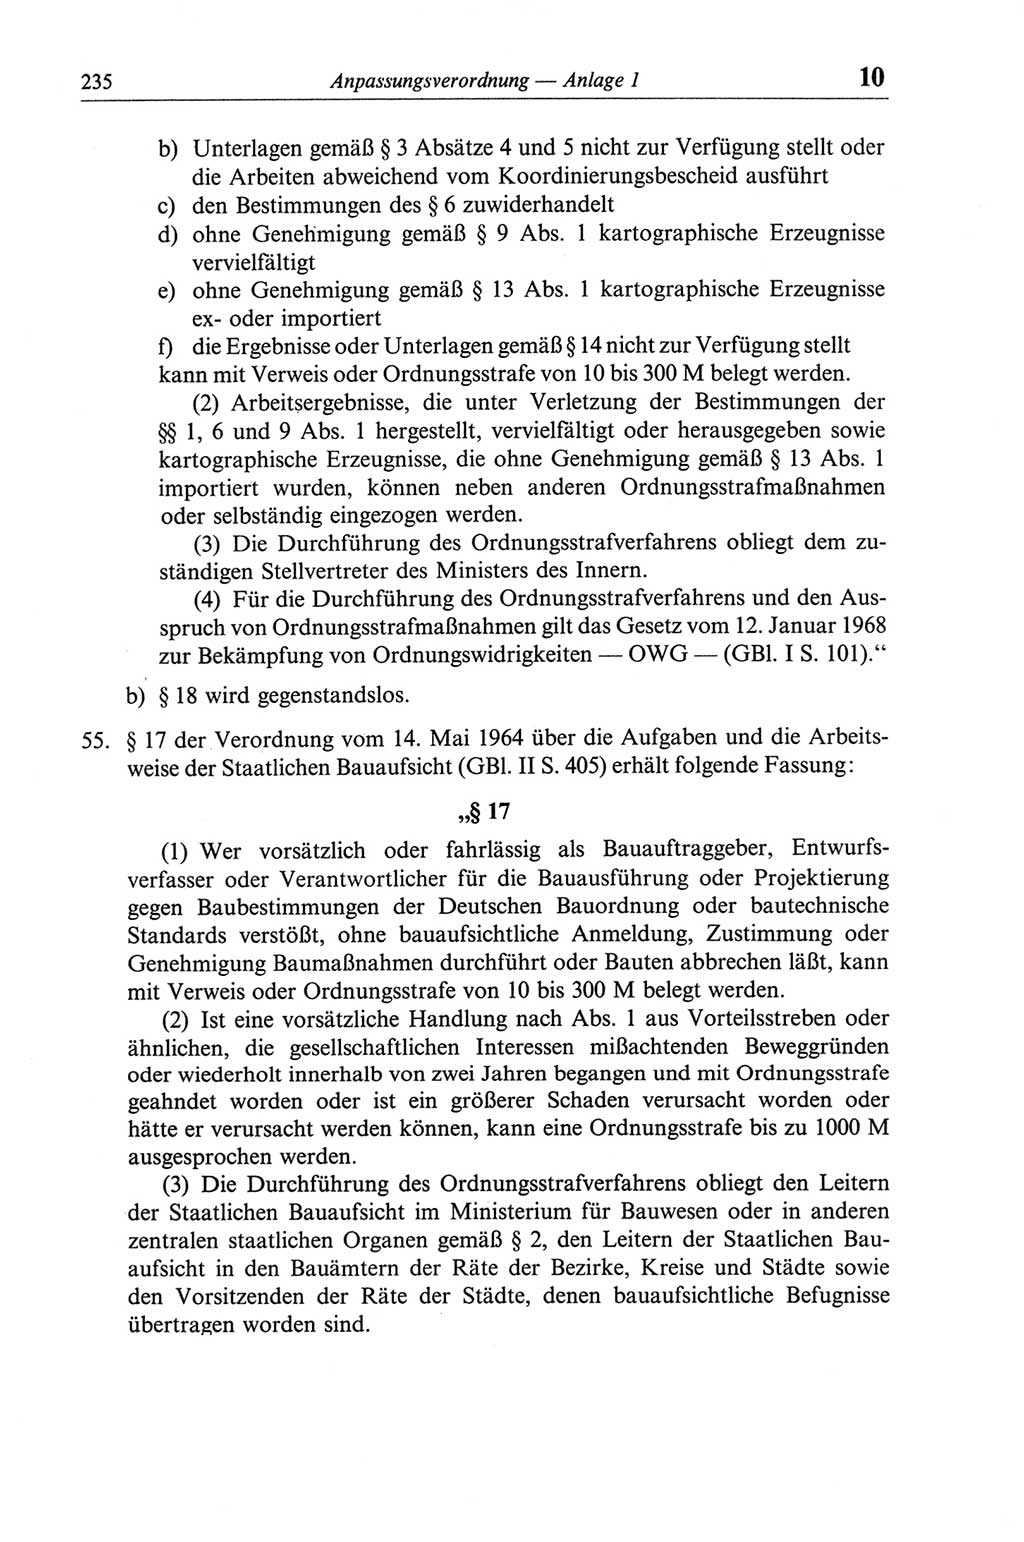 Strafgesetzbuch (StGB) der Deutschen Demokratischen Republik (DDR) und angrenzende Gesetze und Bestimmungen 1968, Seite 235 (StGB Ges. Best. DDR 1968, S. 235)